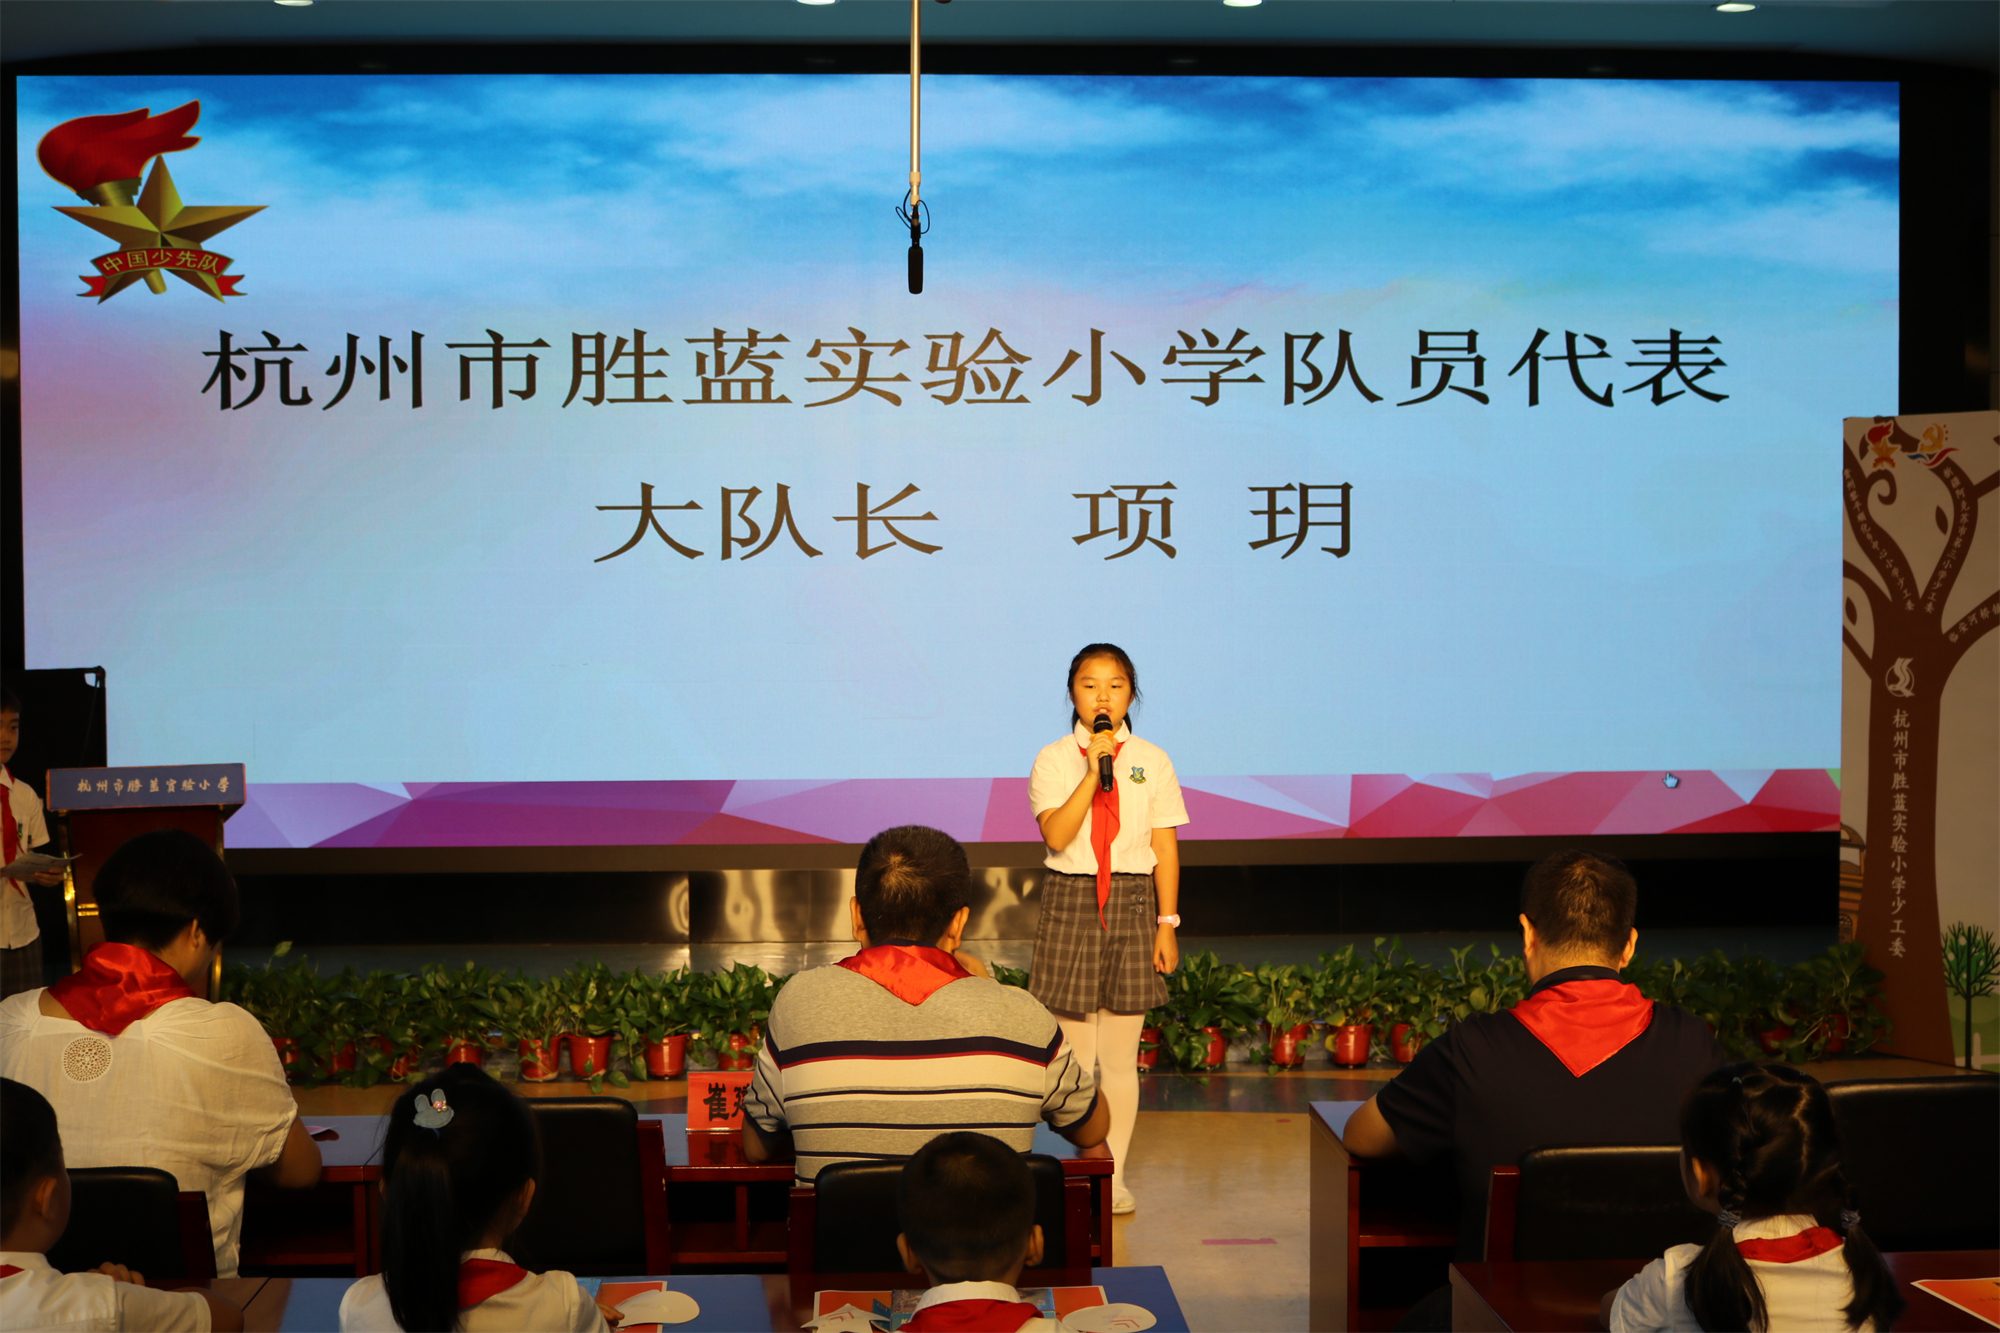 三省四地同开学 杭州市胜蓝实验小学的这个开学典礼很暖心